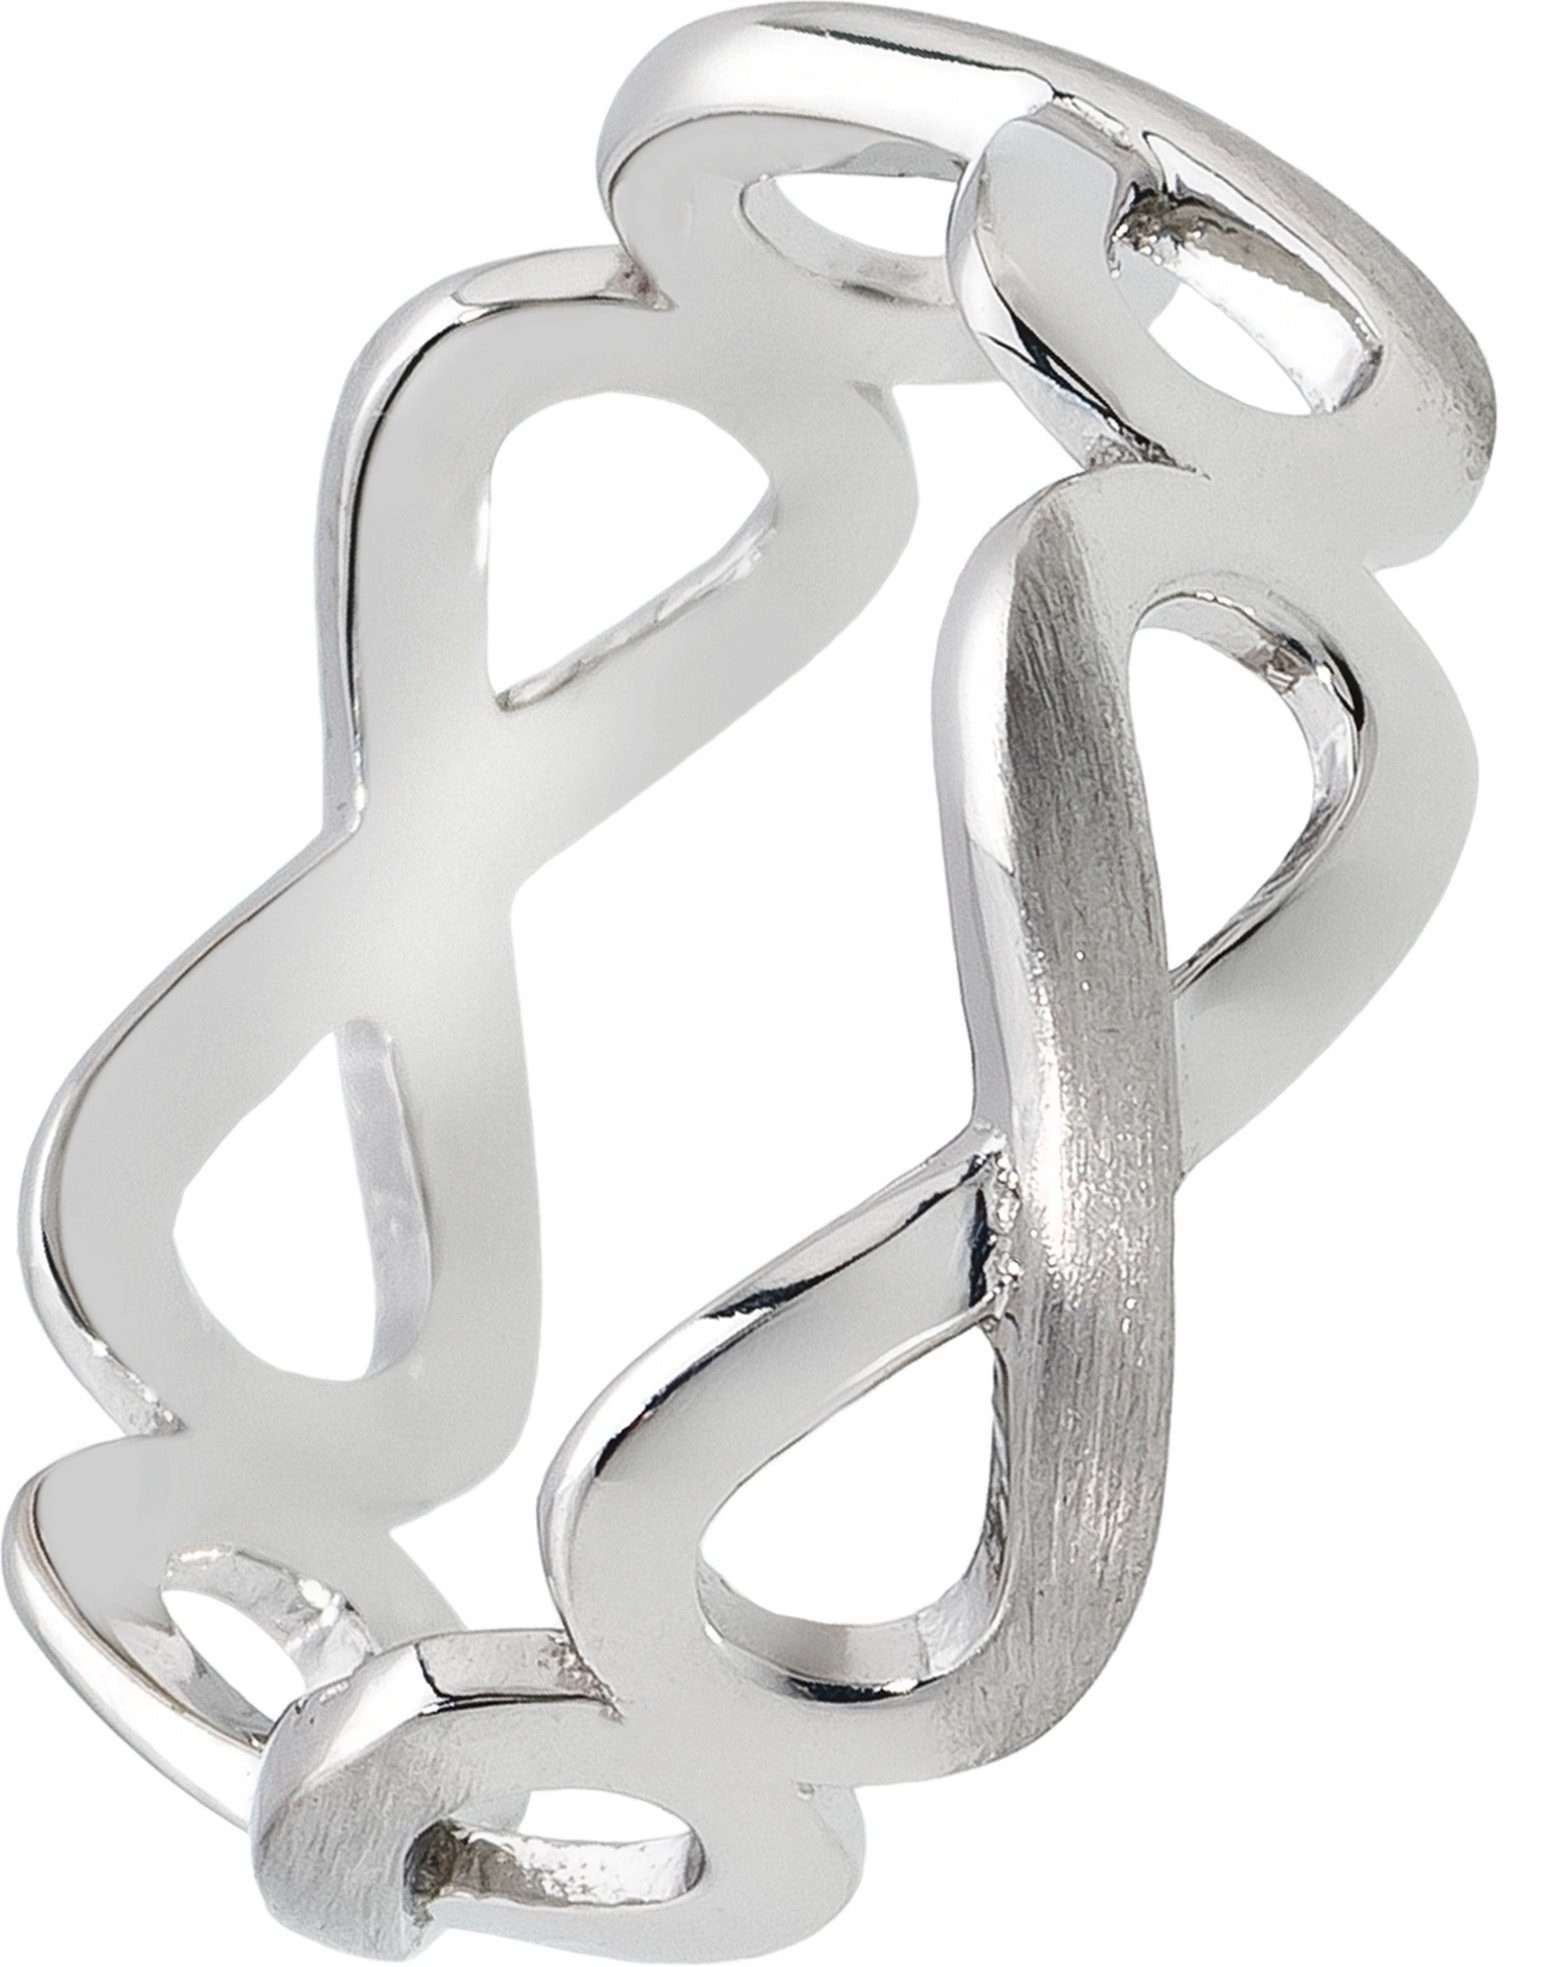 Balia Silberring Balia Ring für Damen Silber 925 (Fingerring), Damen Ring Unendlichkeit, 56 (17,8), 925 Sterling Silber